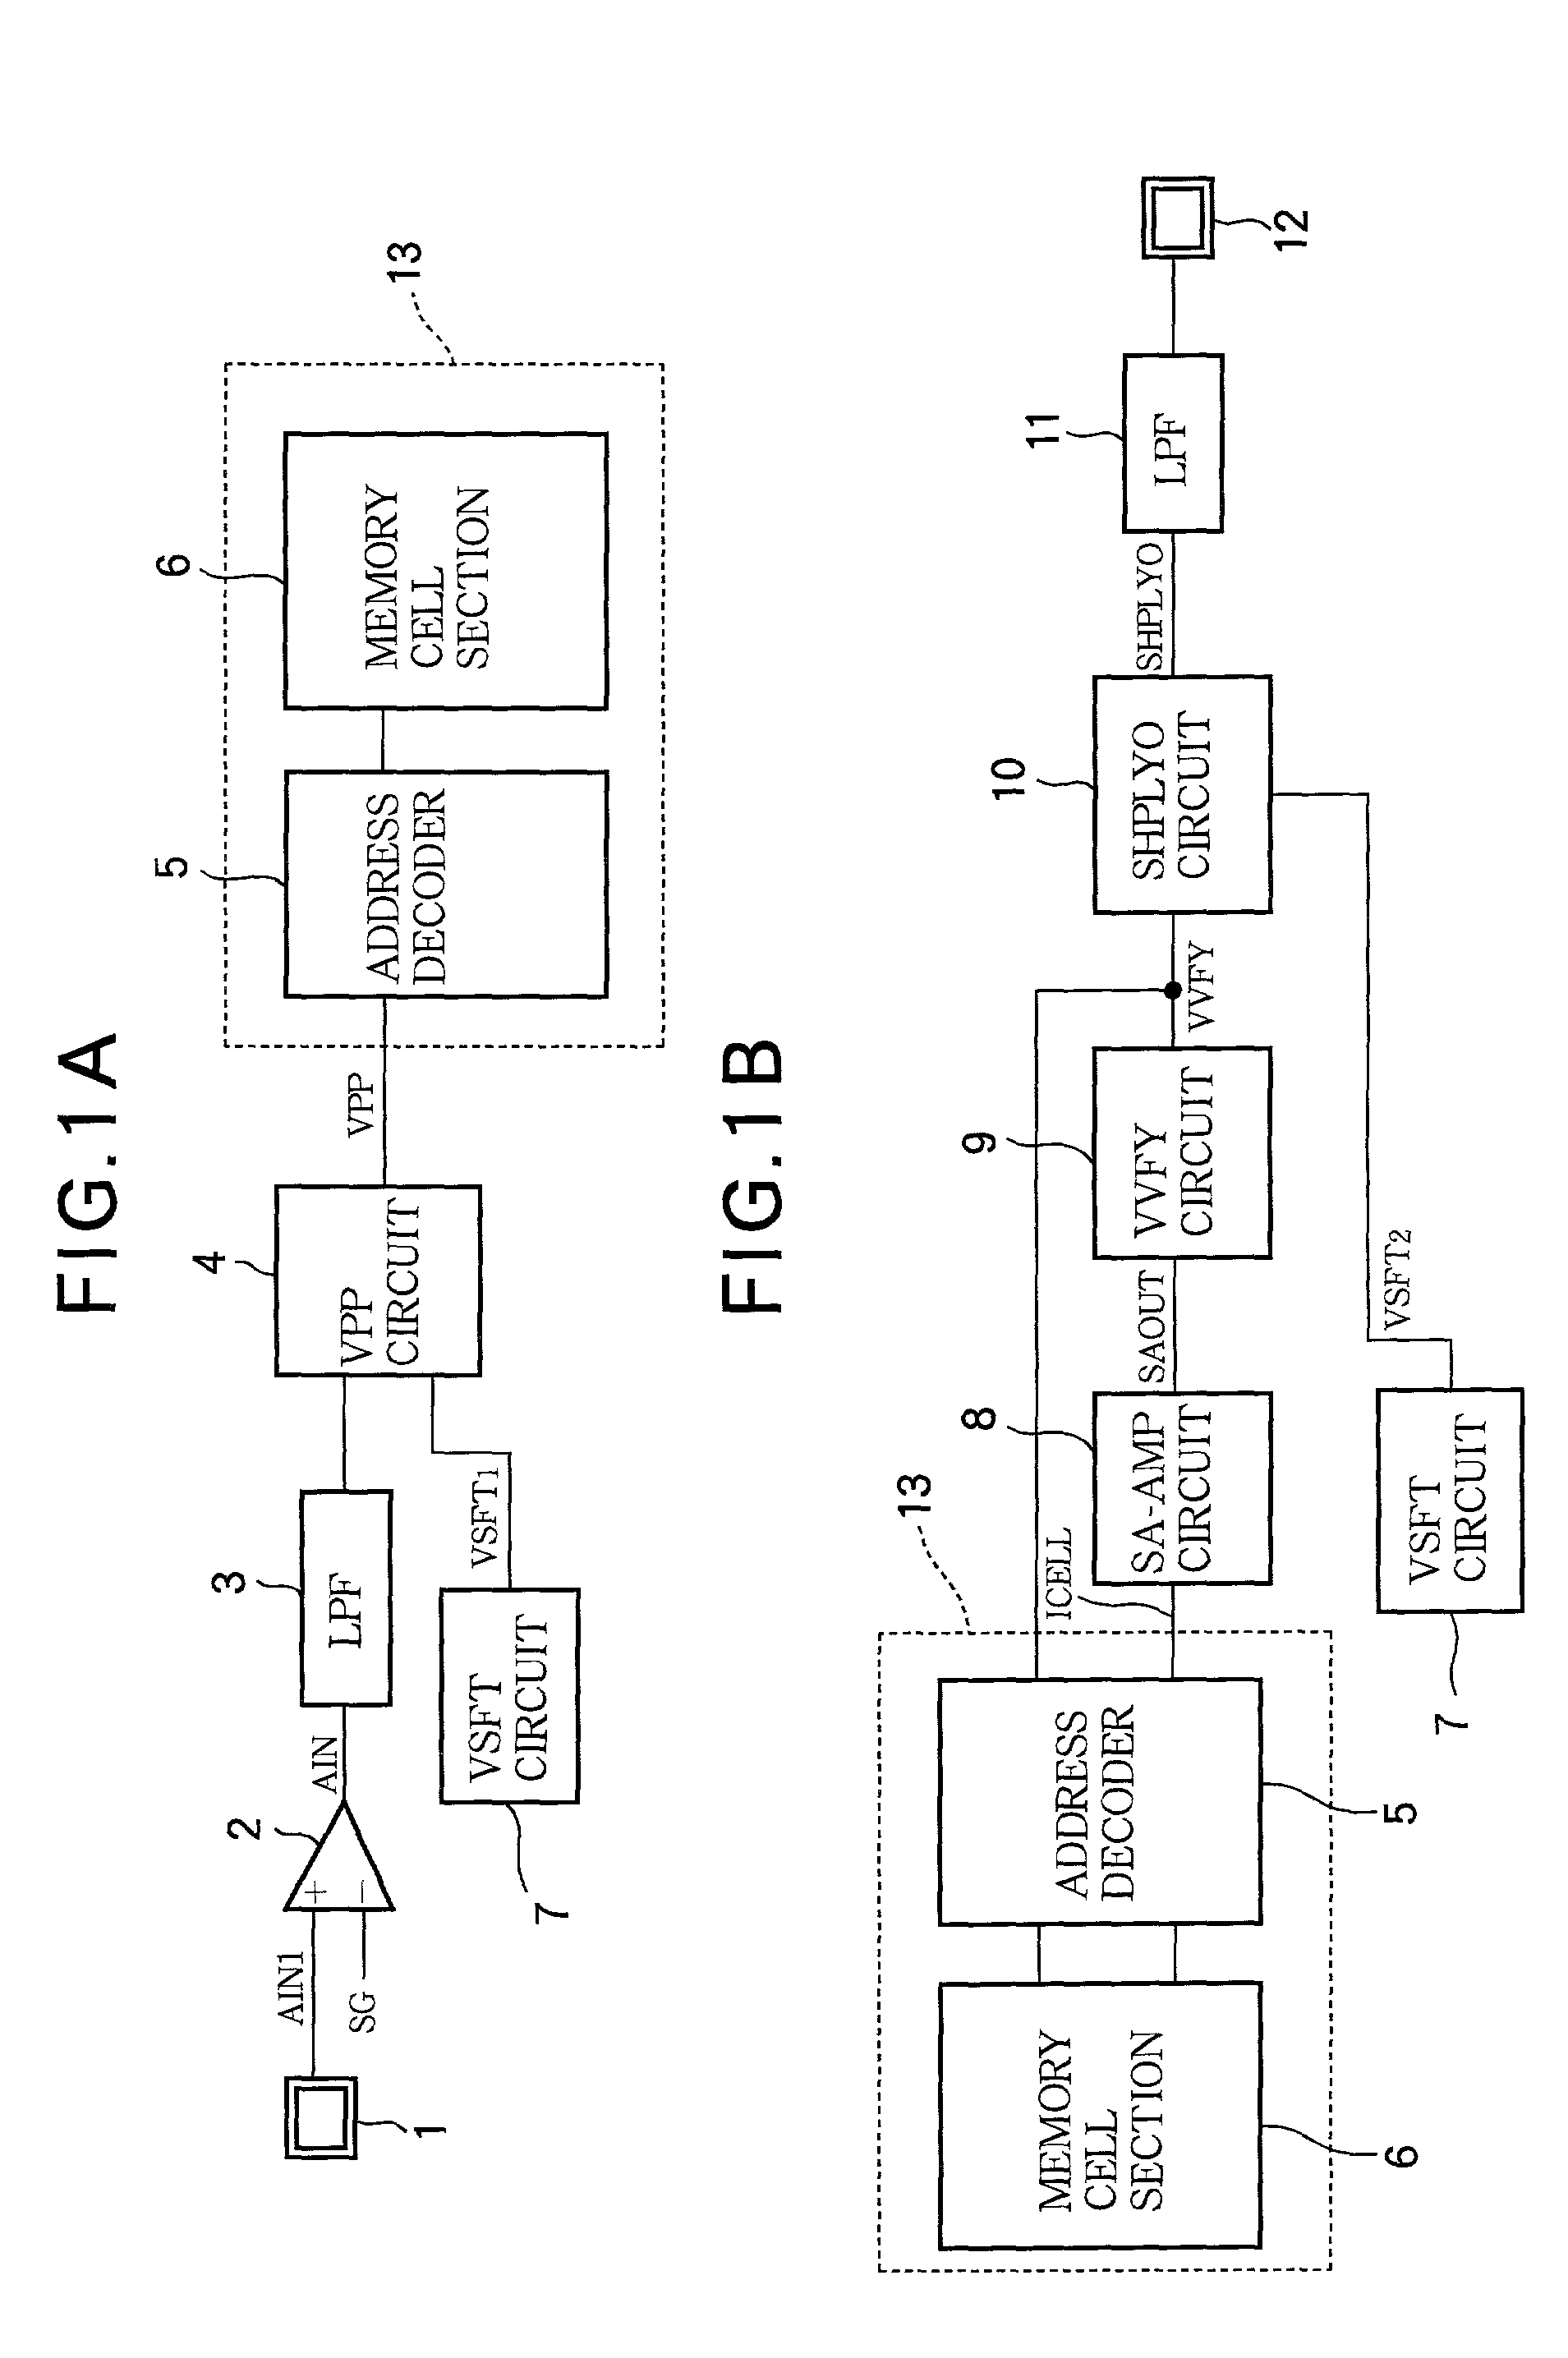 Redundant memory circuit for analog semiconductor memory